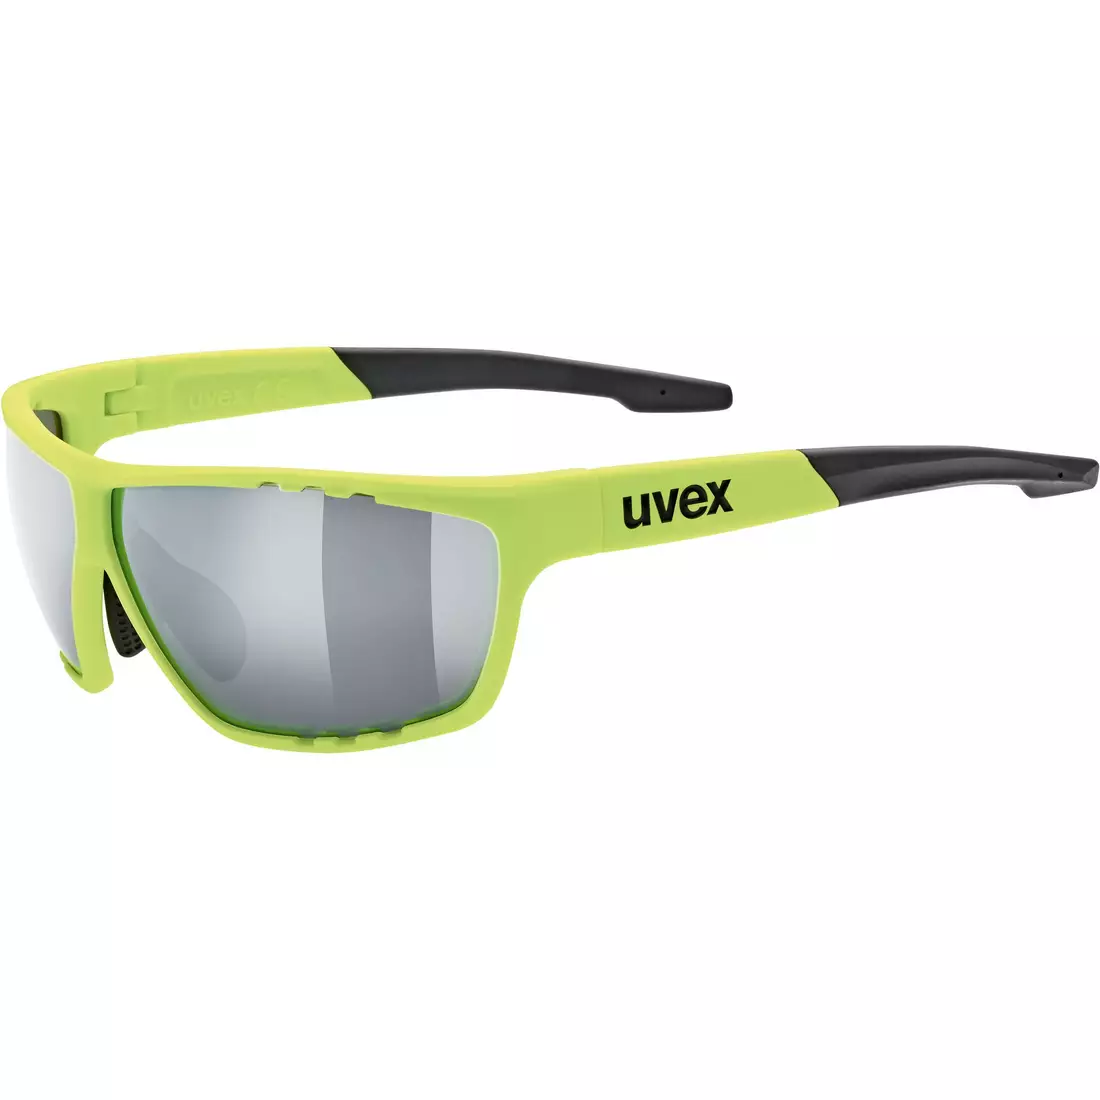 Cyklistické / sportovní brýle Uvex sportstyle 706 53/2/006/6616/UNI